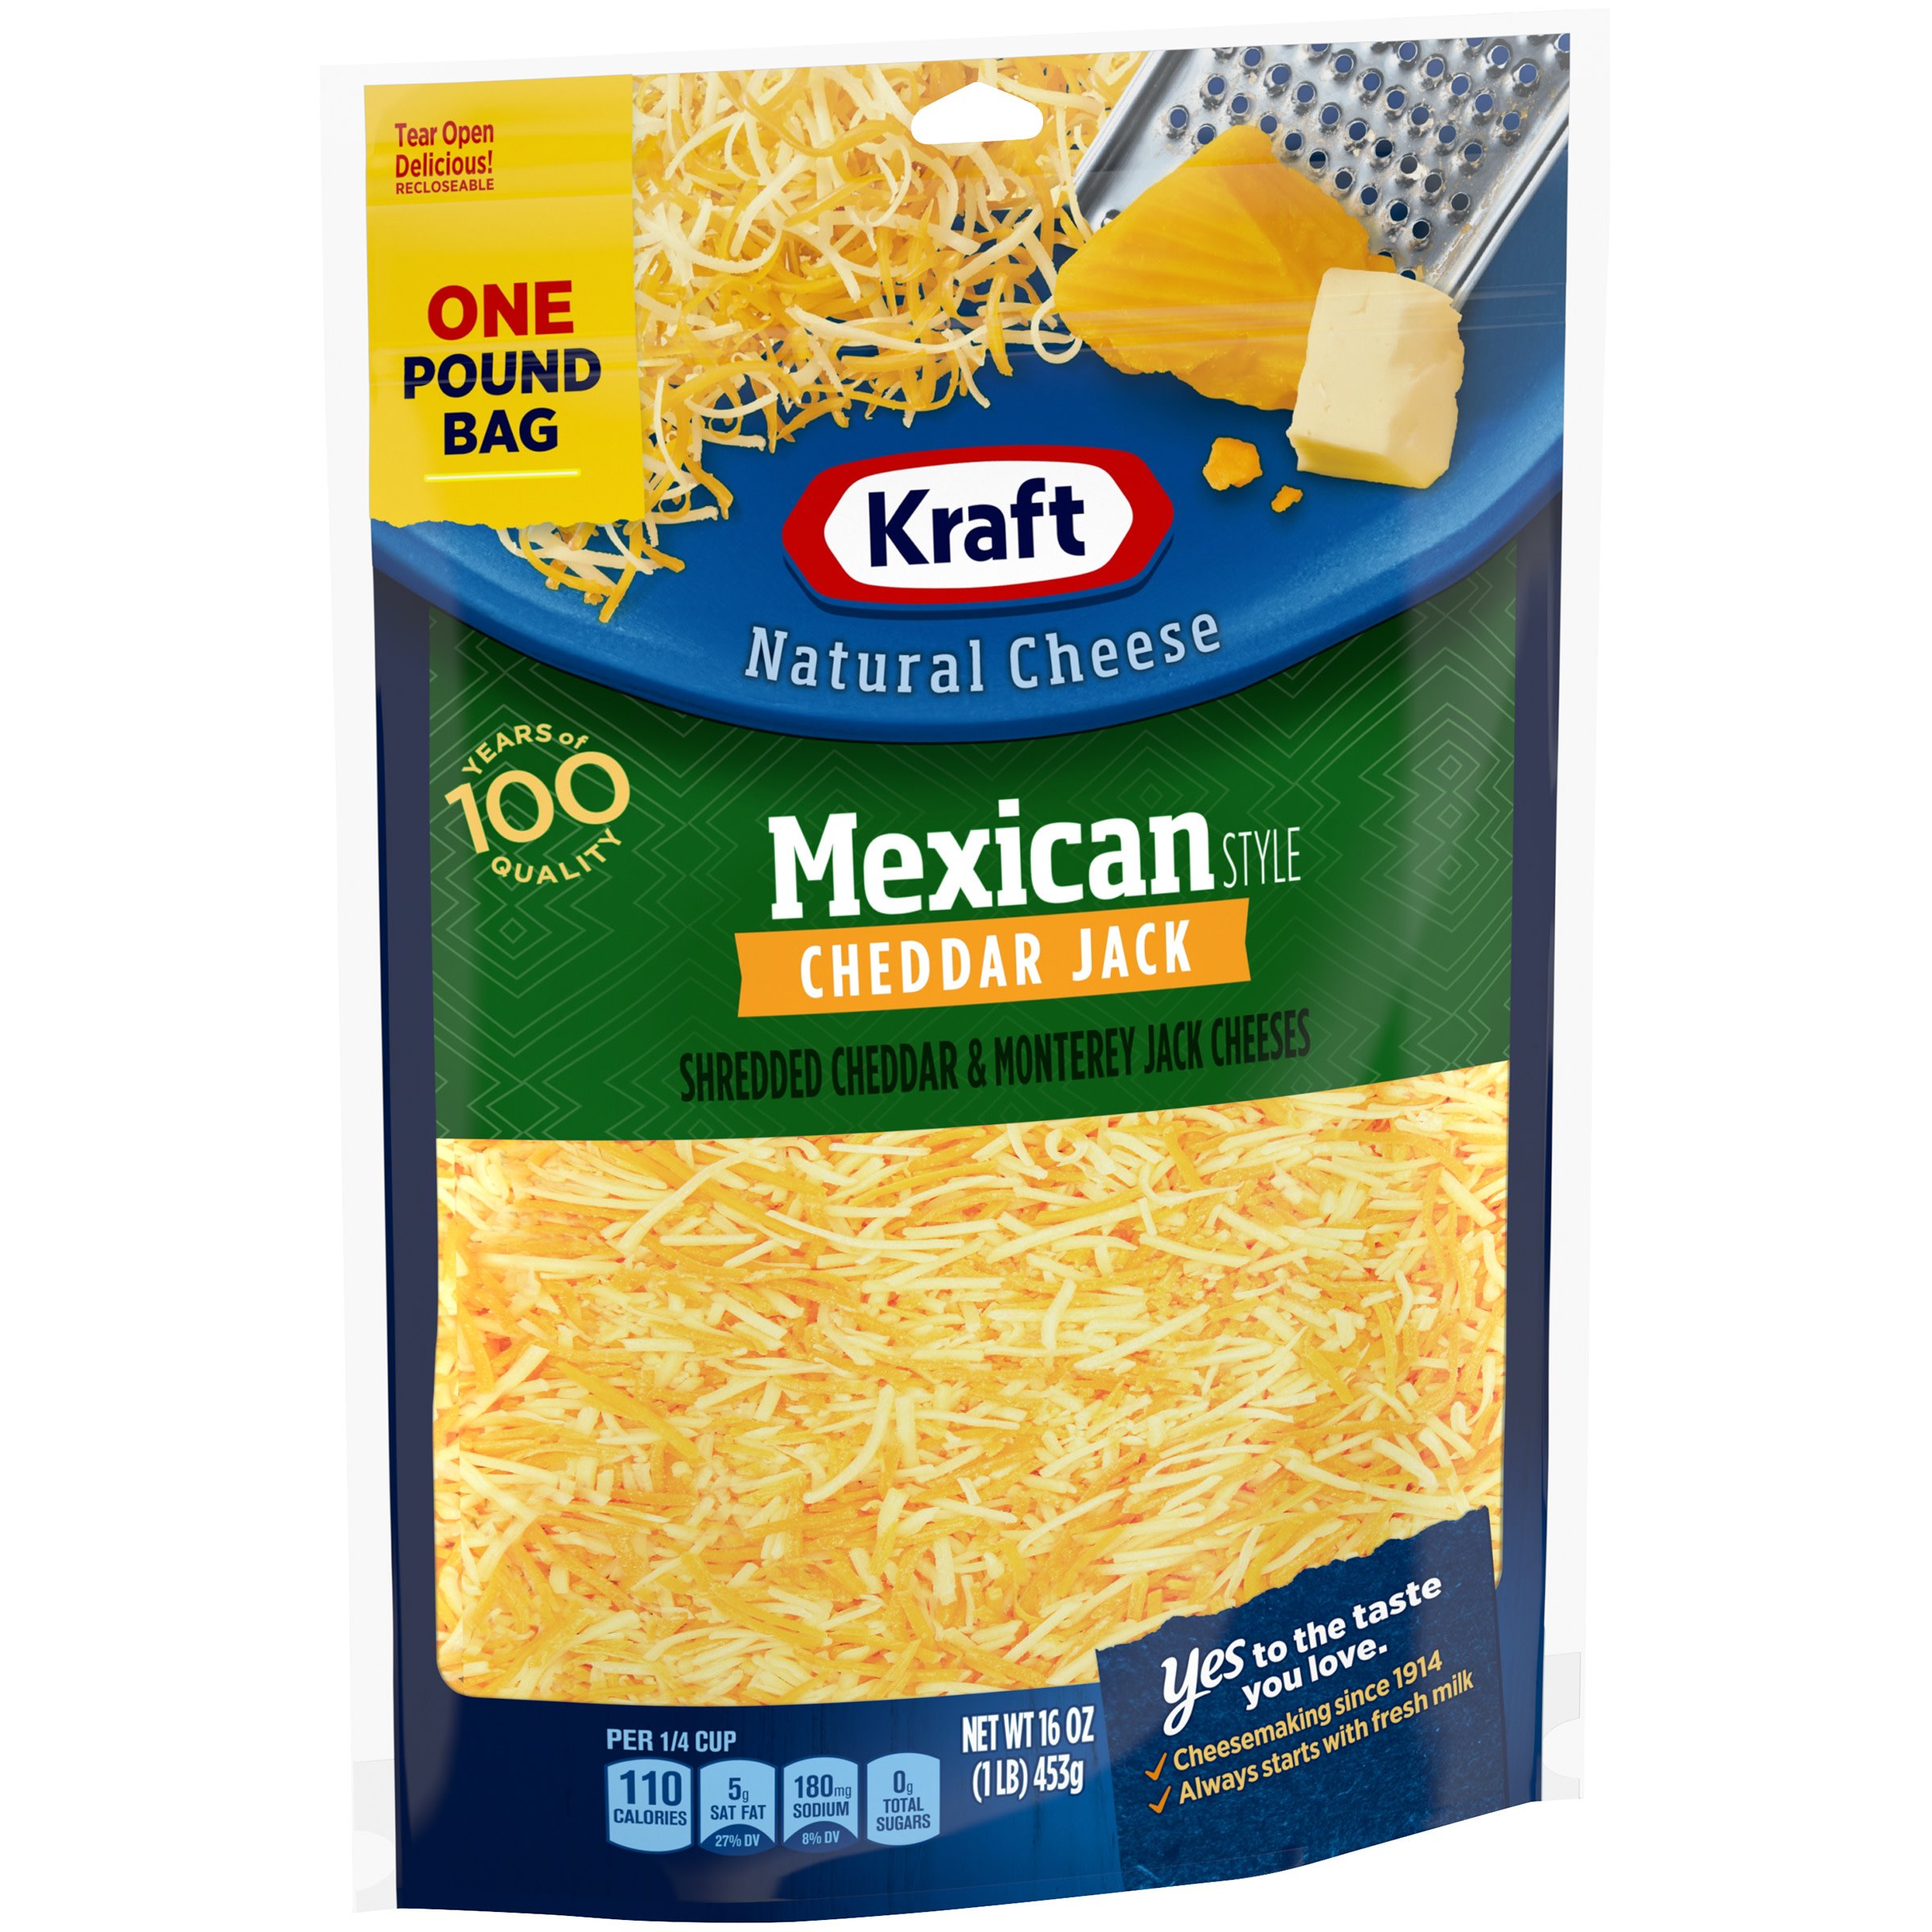 Kraft Mexican Style Cheddar Jack Shredded Cheese, 16 oz Bag